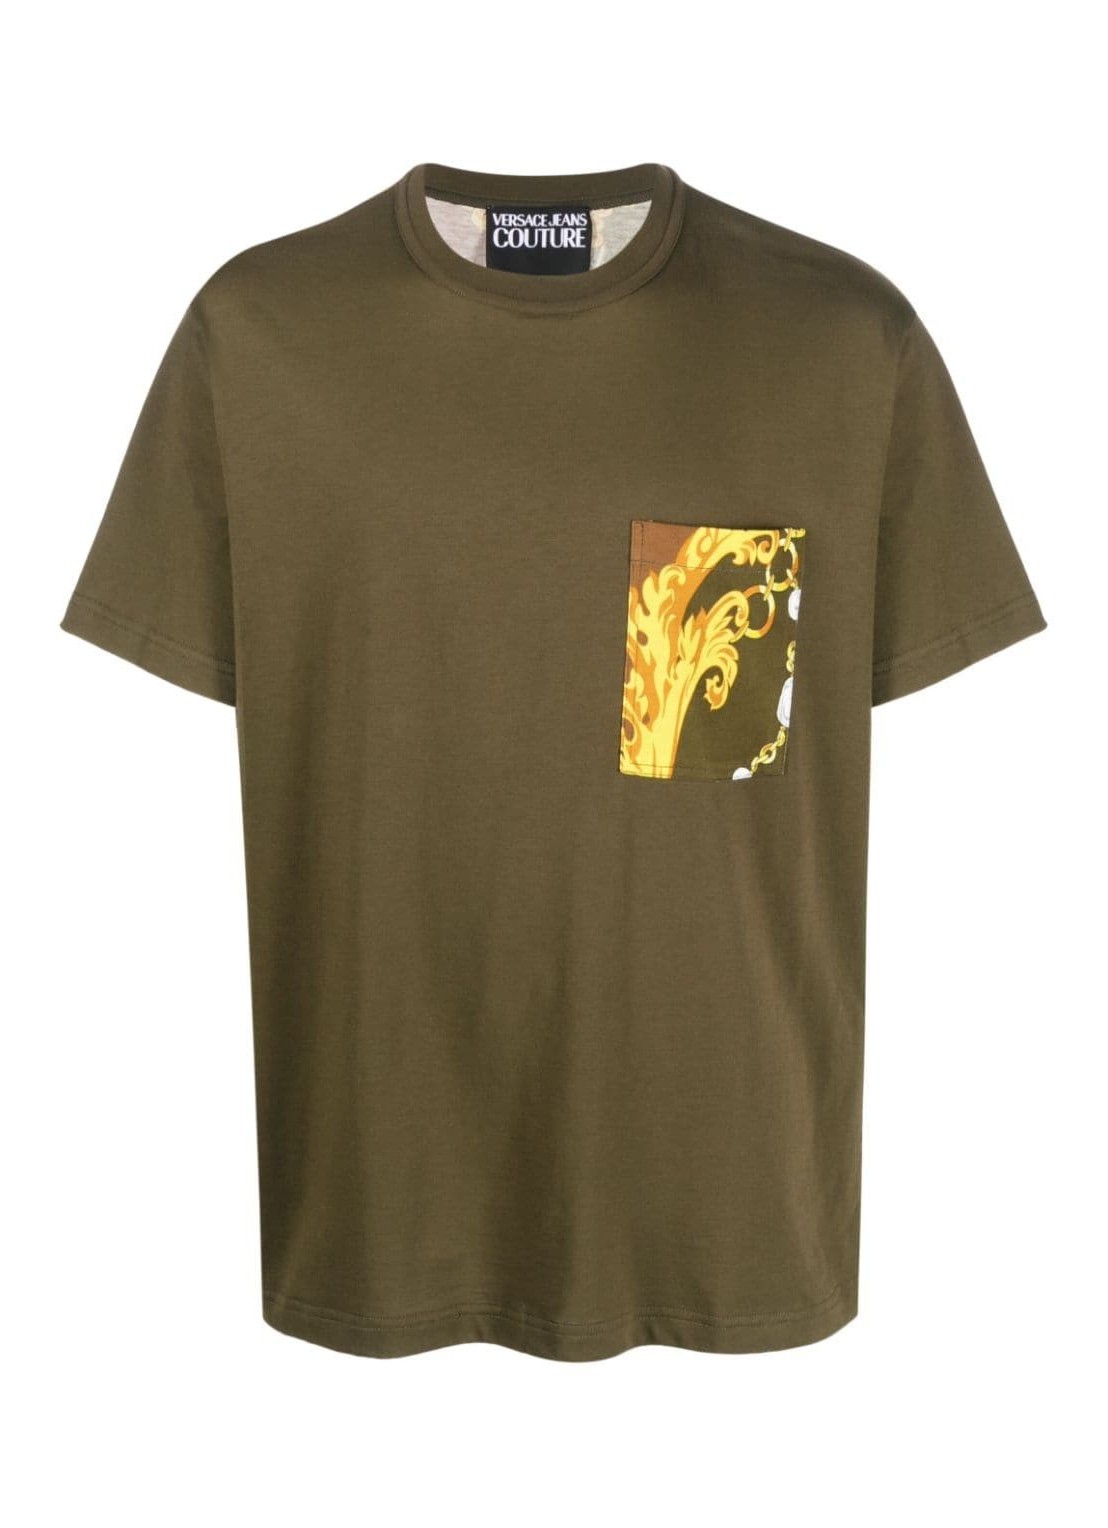 Camiseta versace t-shirt man 75up601 r pkt contr chain 75gah6r1 g70 talla M
 